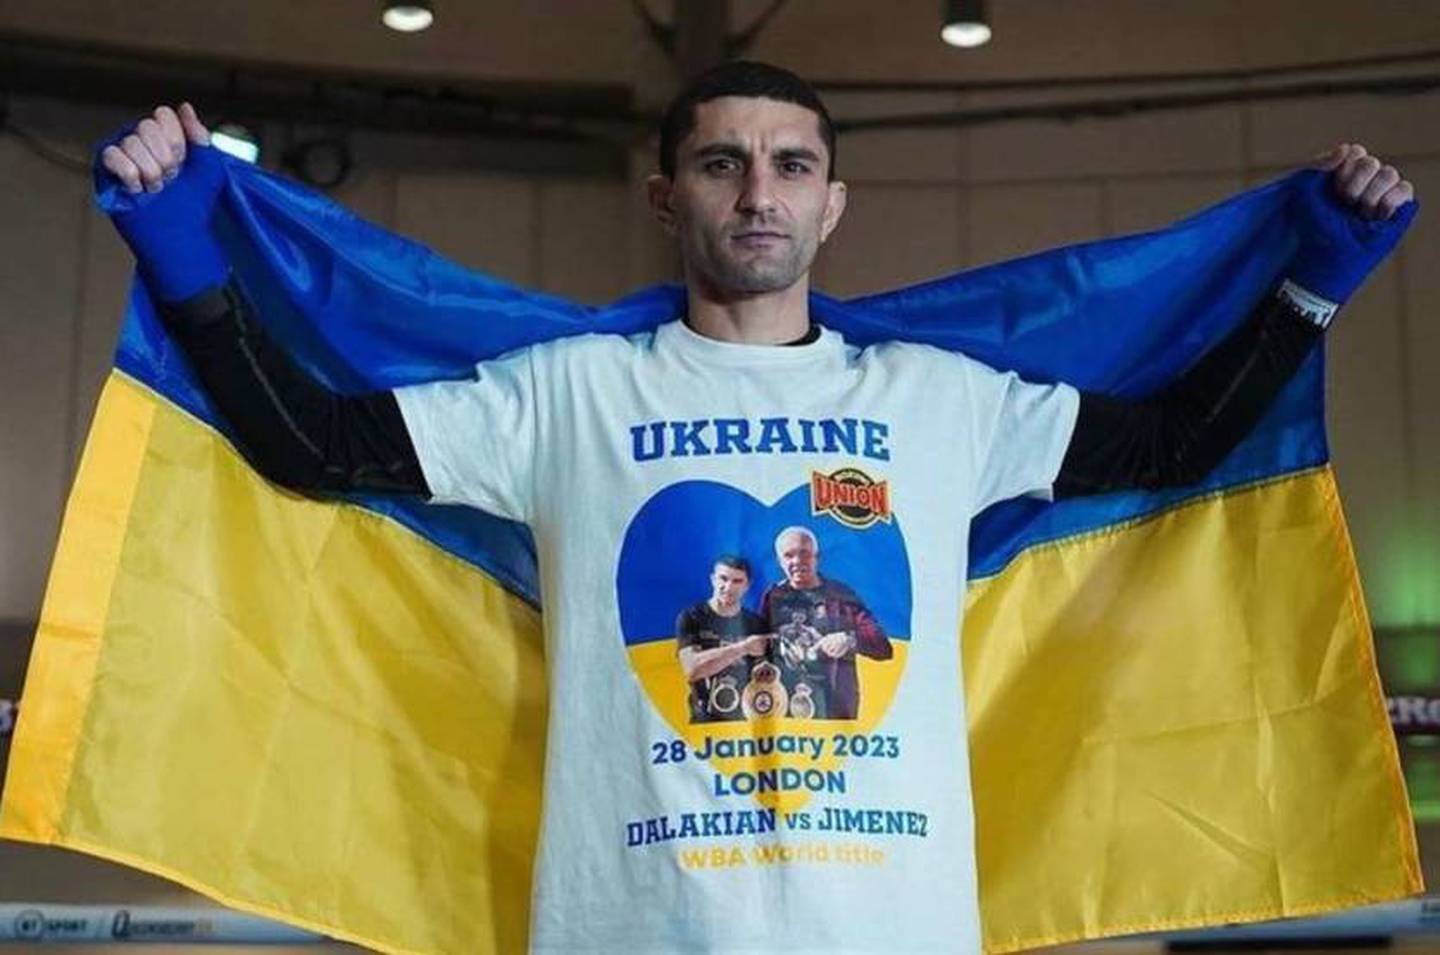 Artem Dalakyan, boxeo, ucrania